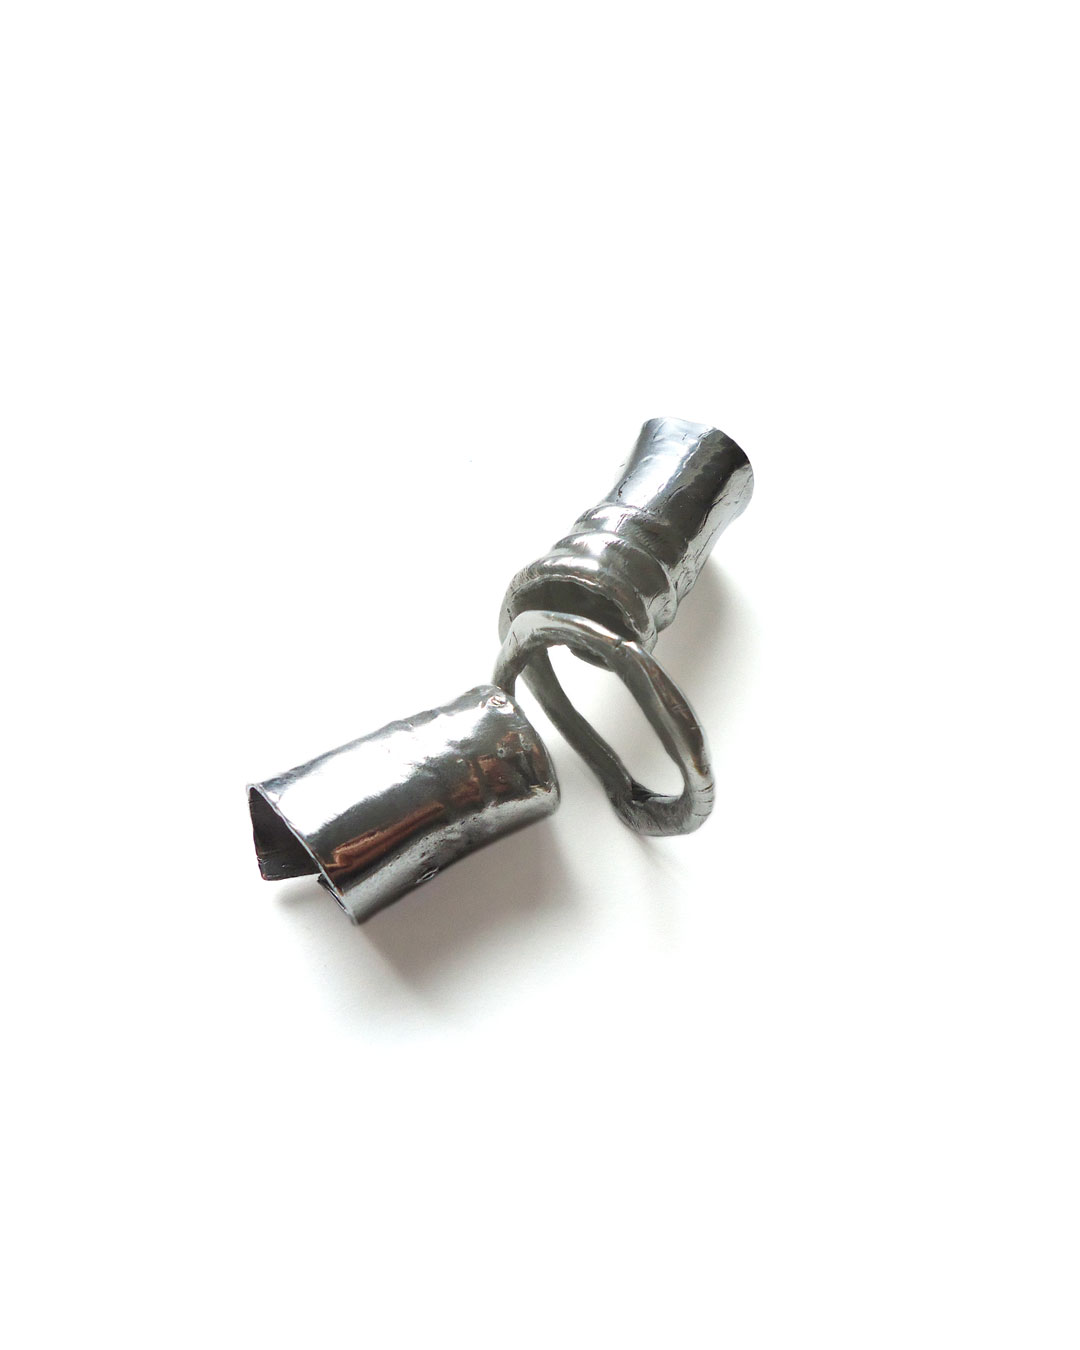 Dana Seachuga, Rebellious-Spring-Ring 2, 2015, ring; aluminium, titanium, 90 x 30 x 20 mm, €395